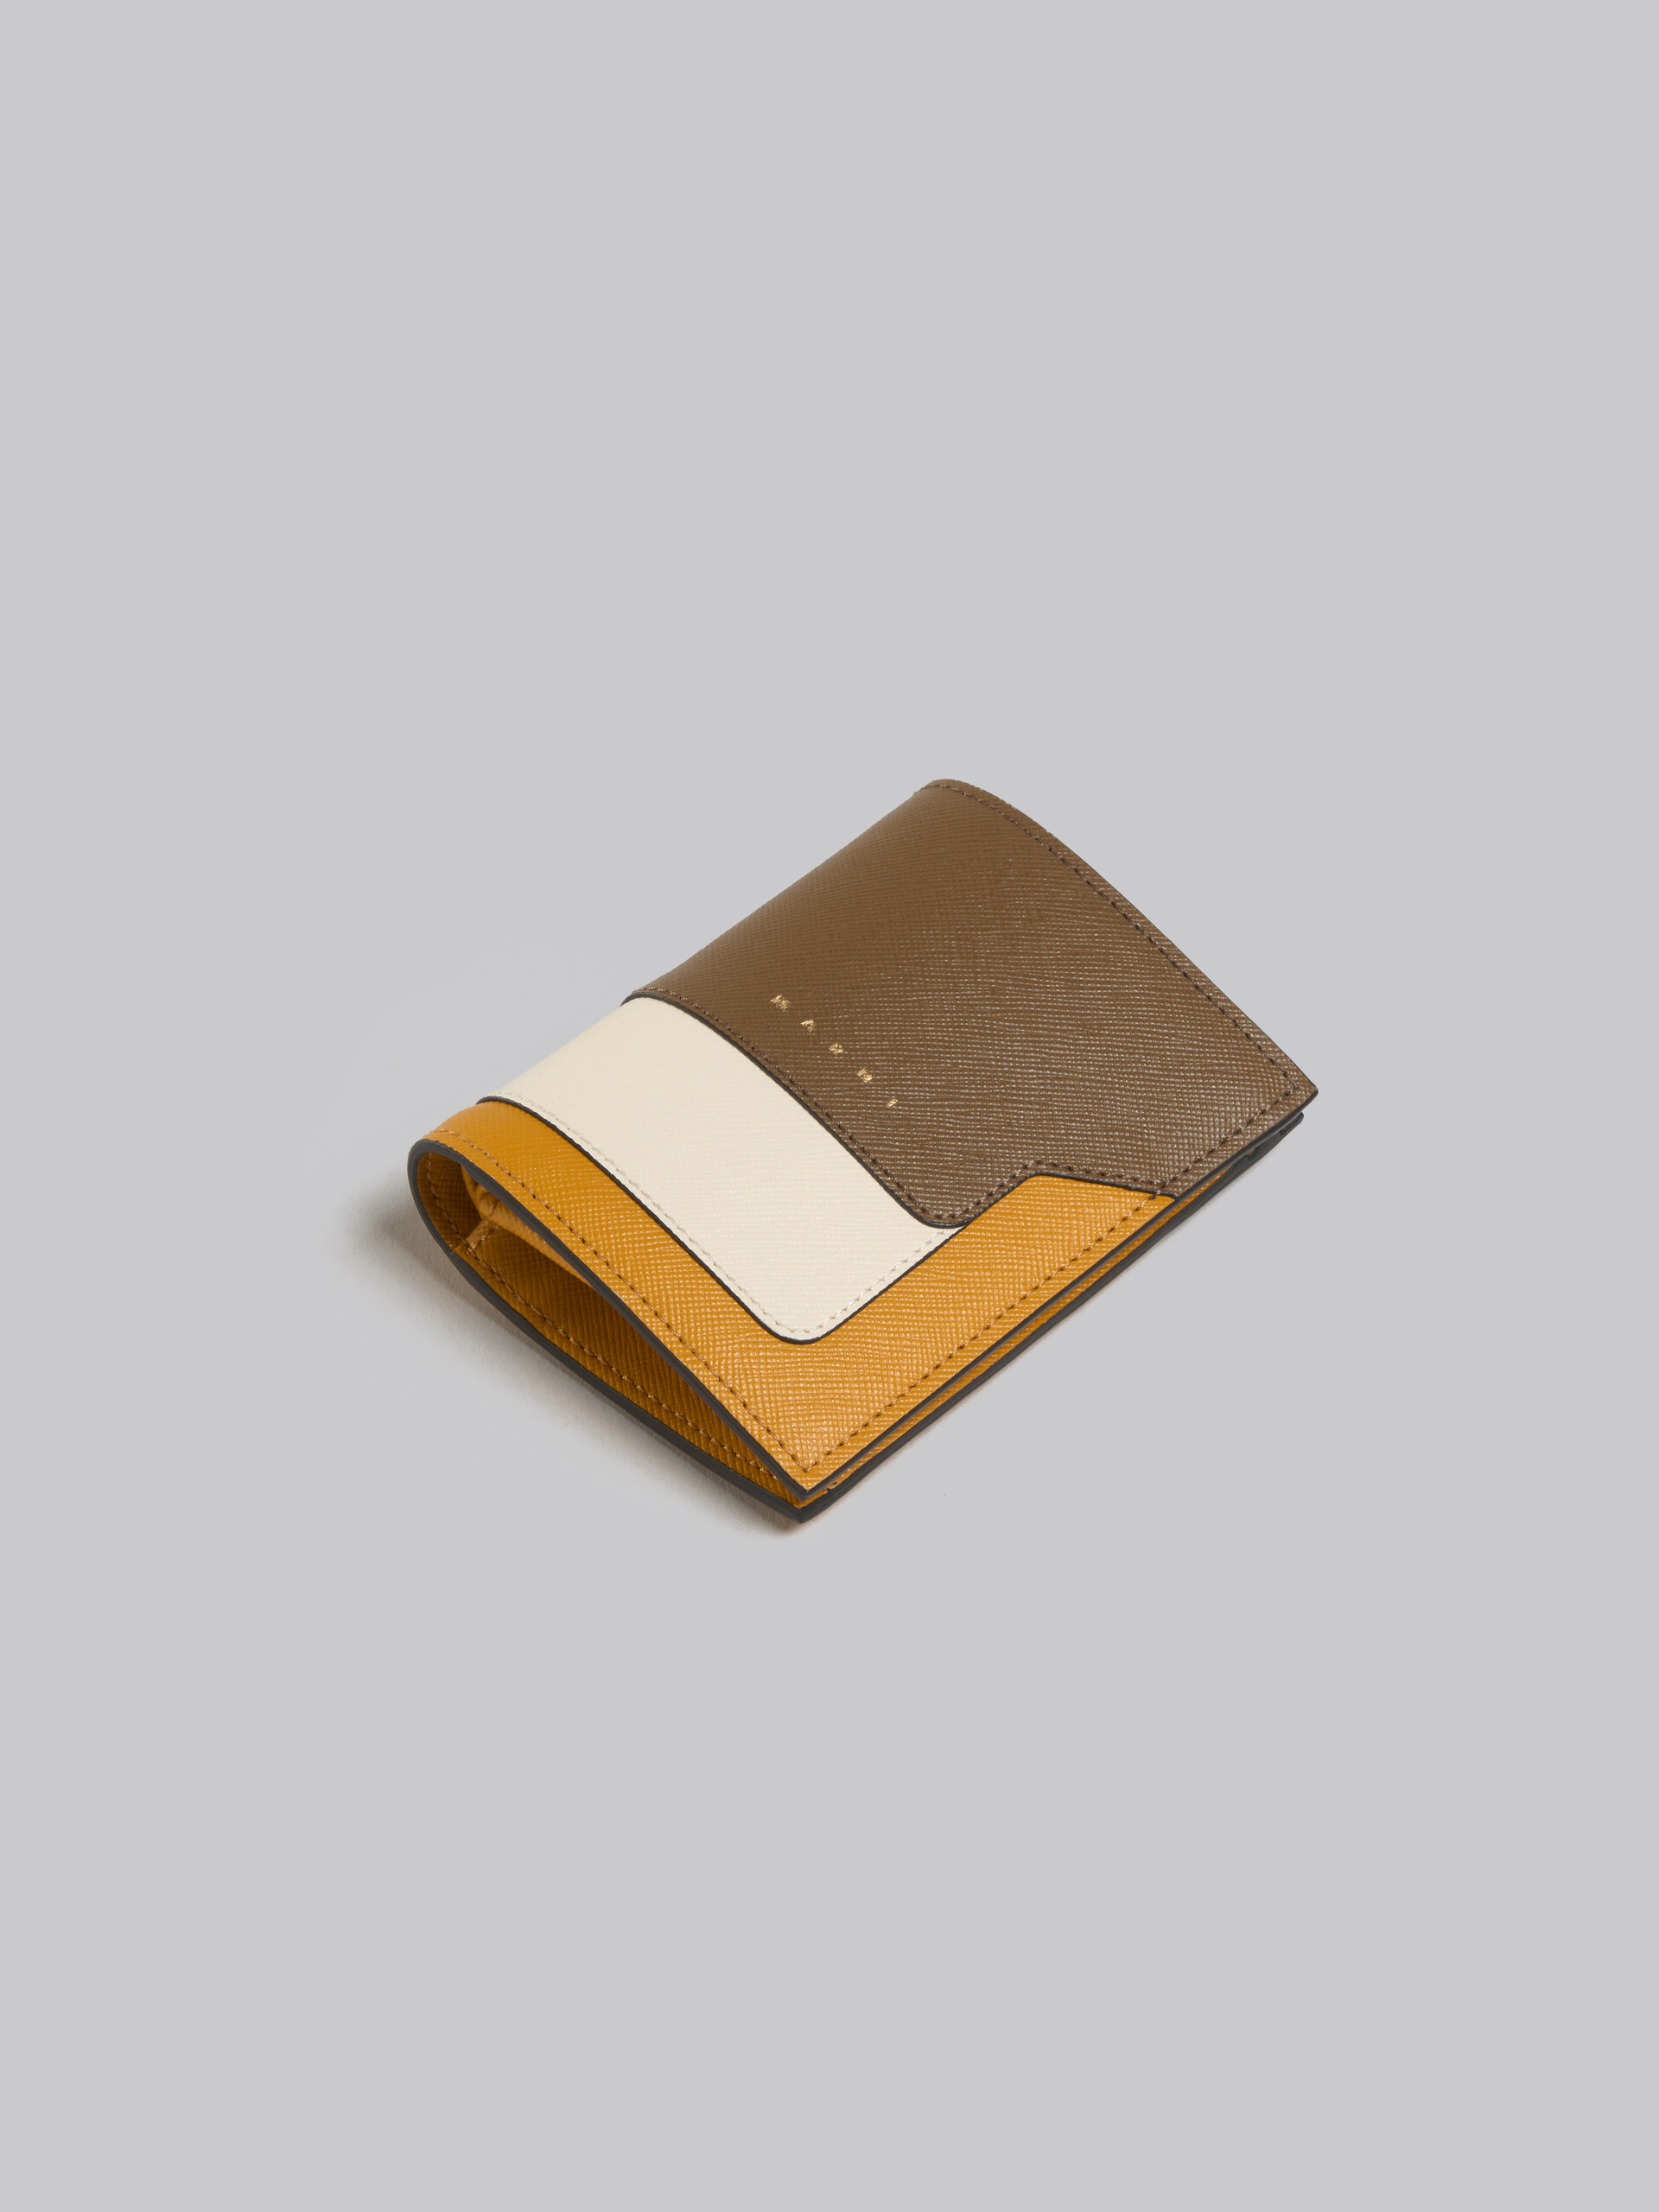 ティーグリーン、ライムストーン、ライトキャメル　サフィアーノレザー製二つ折りウォレット - 財布 - Image 5